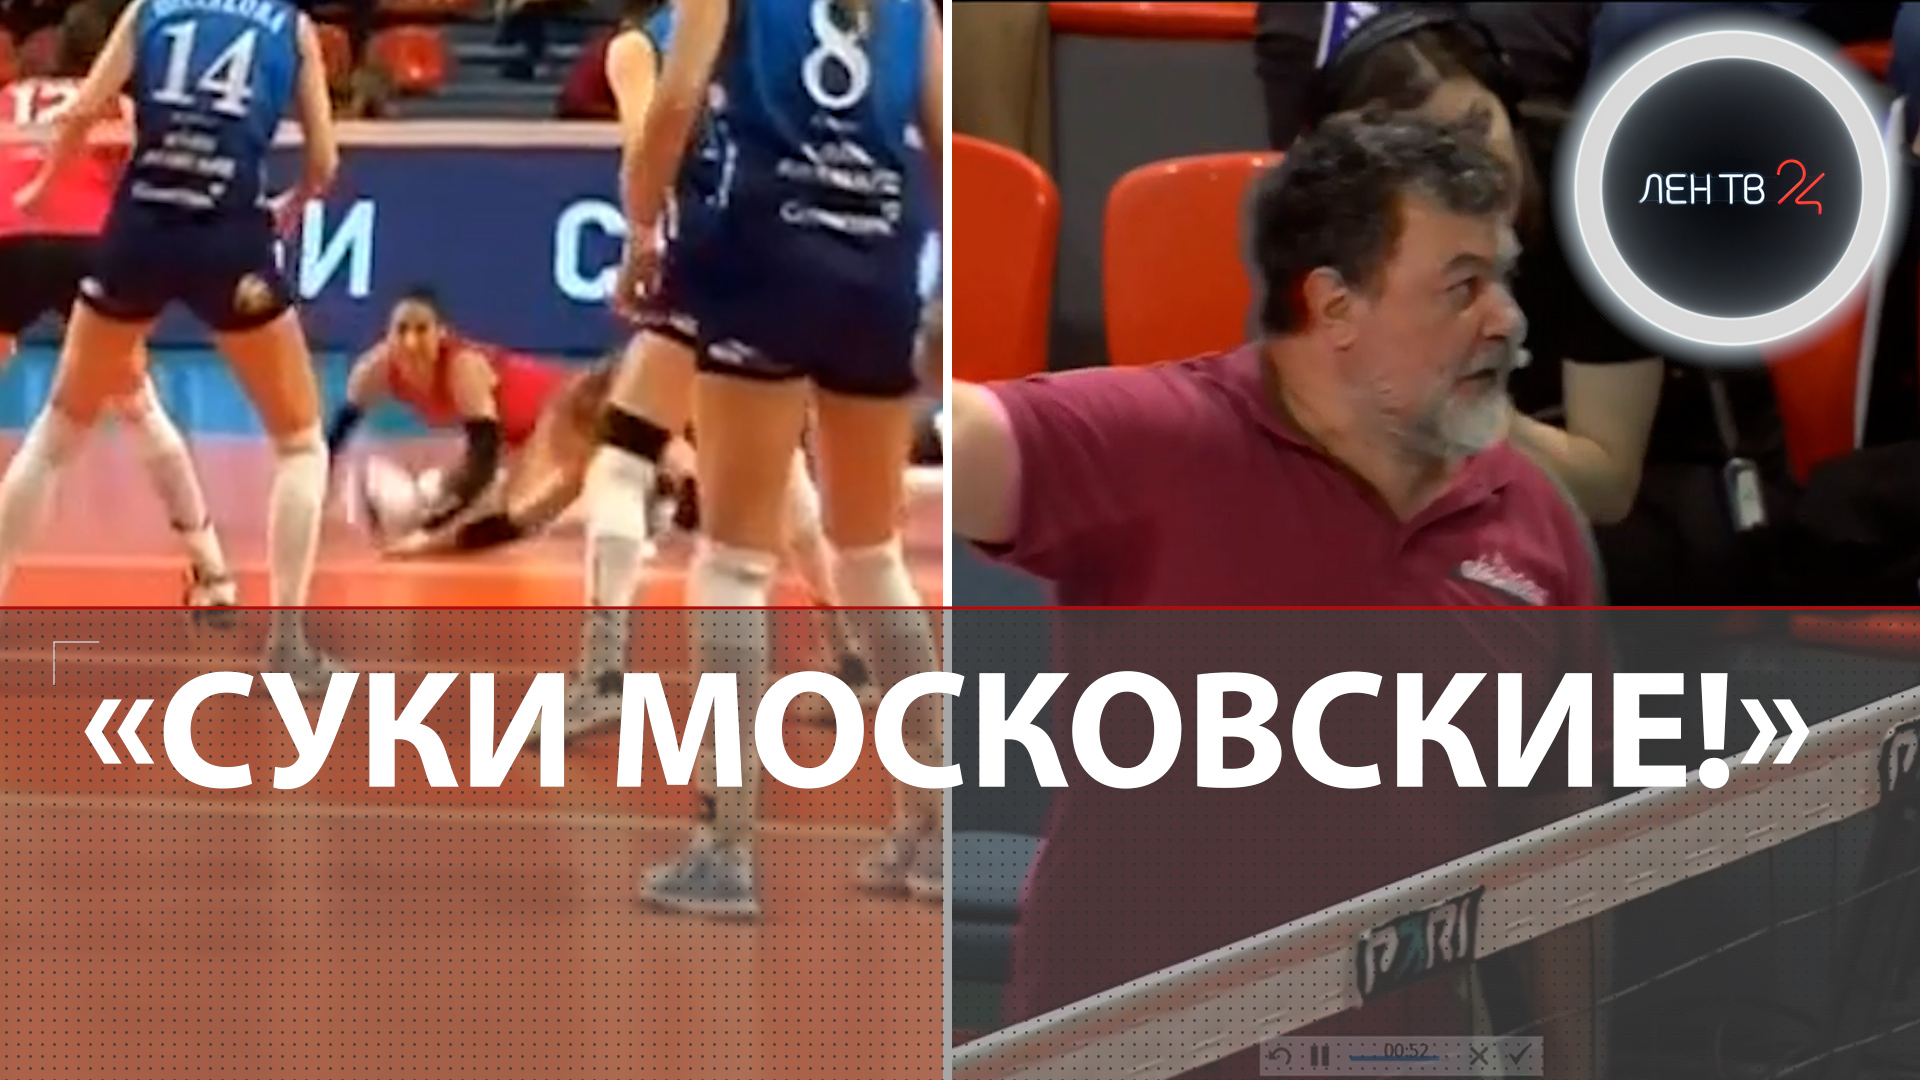 «Суки московские!» | Тренера из СПб могут наказать за грубость | Сезон скандалов в женском волейболе